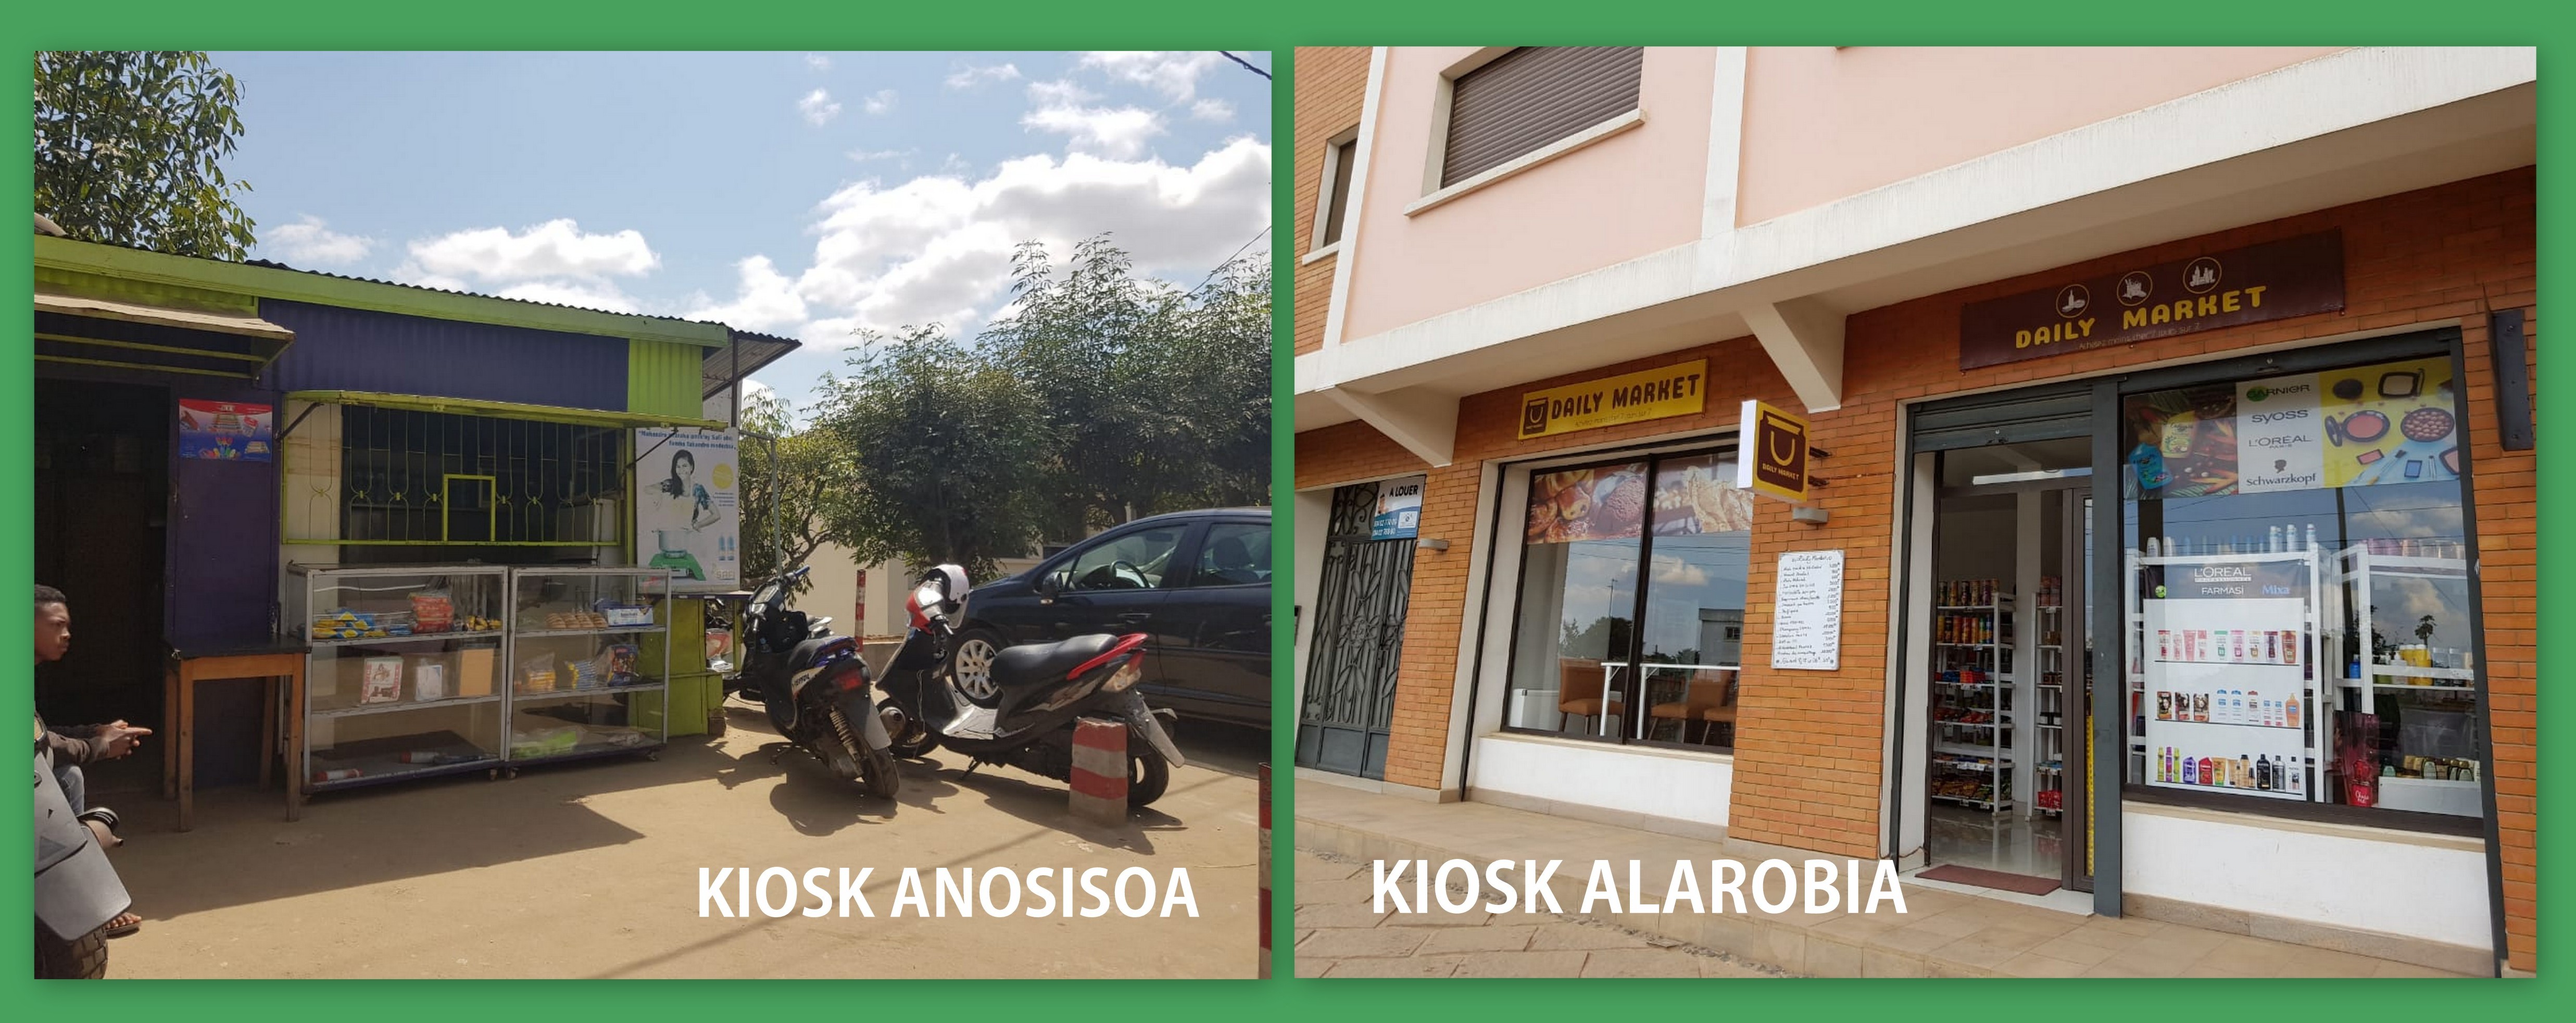 Ethanol disponible à Antananarivo dans deux nouveaux kiosks